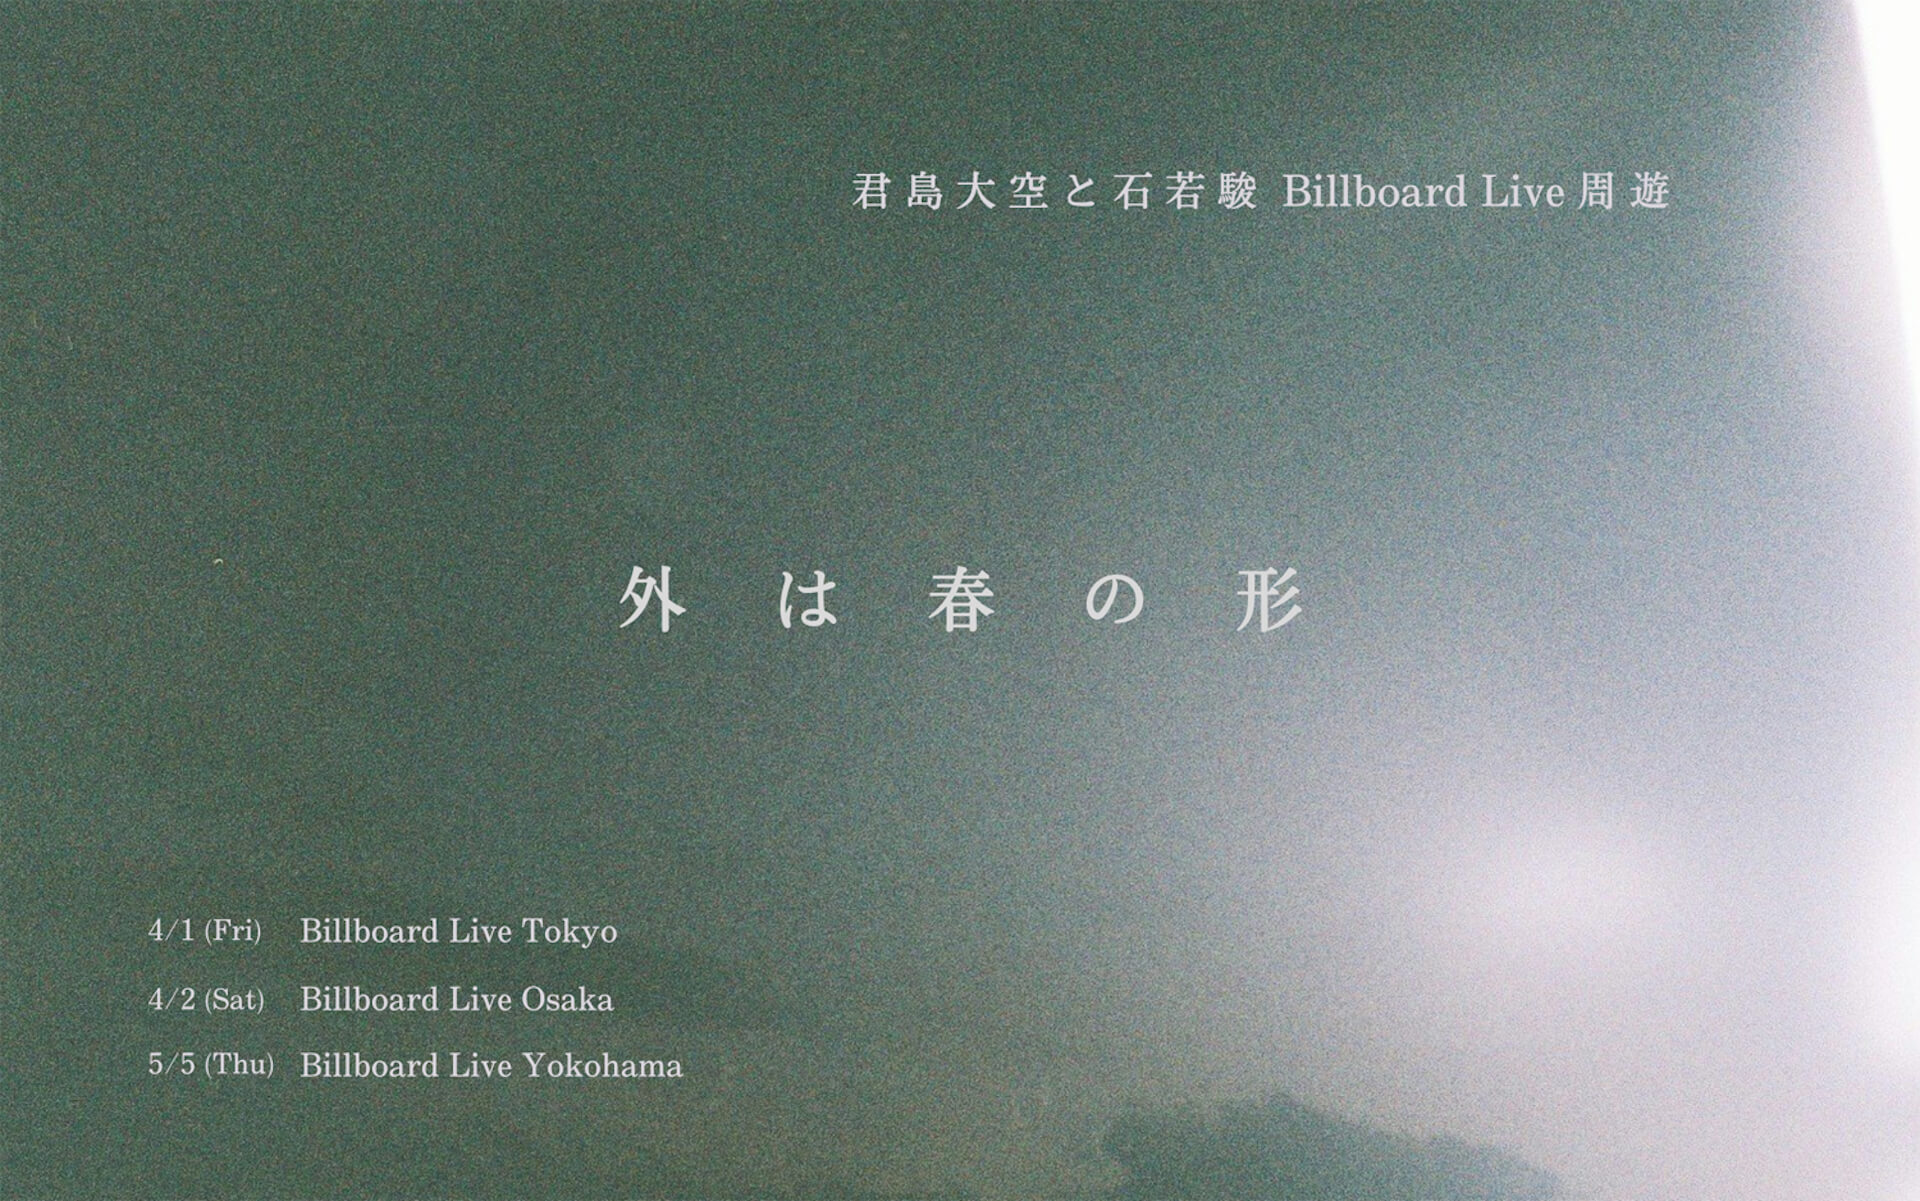 君島大空、石若駿と共にビルボードを回る春のツアーを発表 music220128-kimishima-ohzora-ishiwaka-shun-1